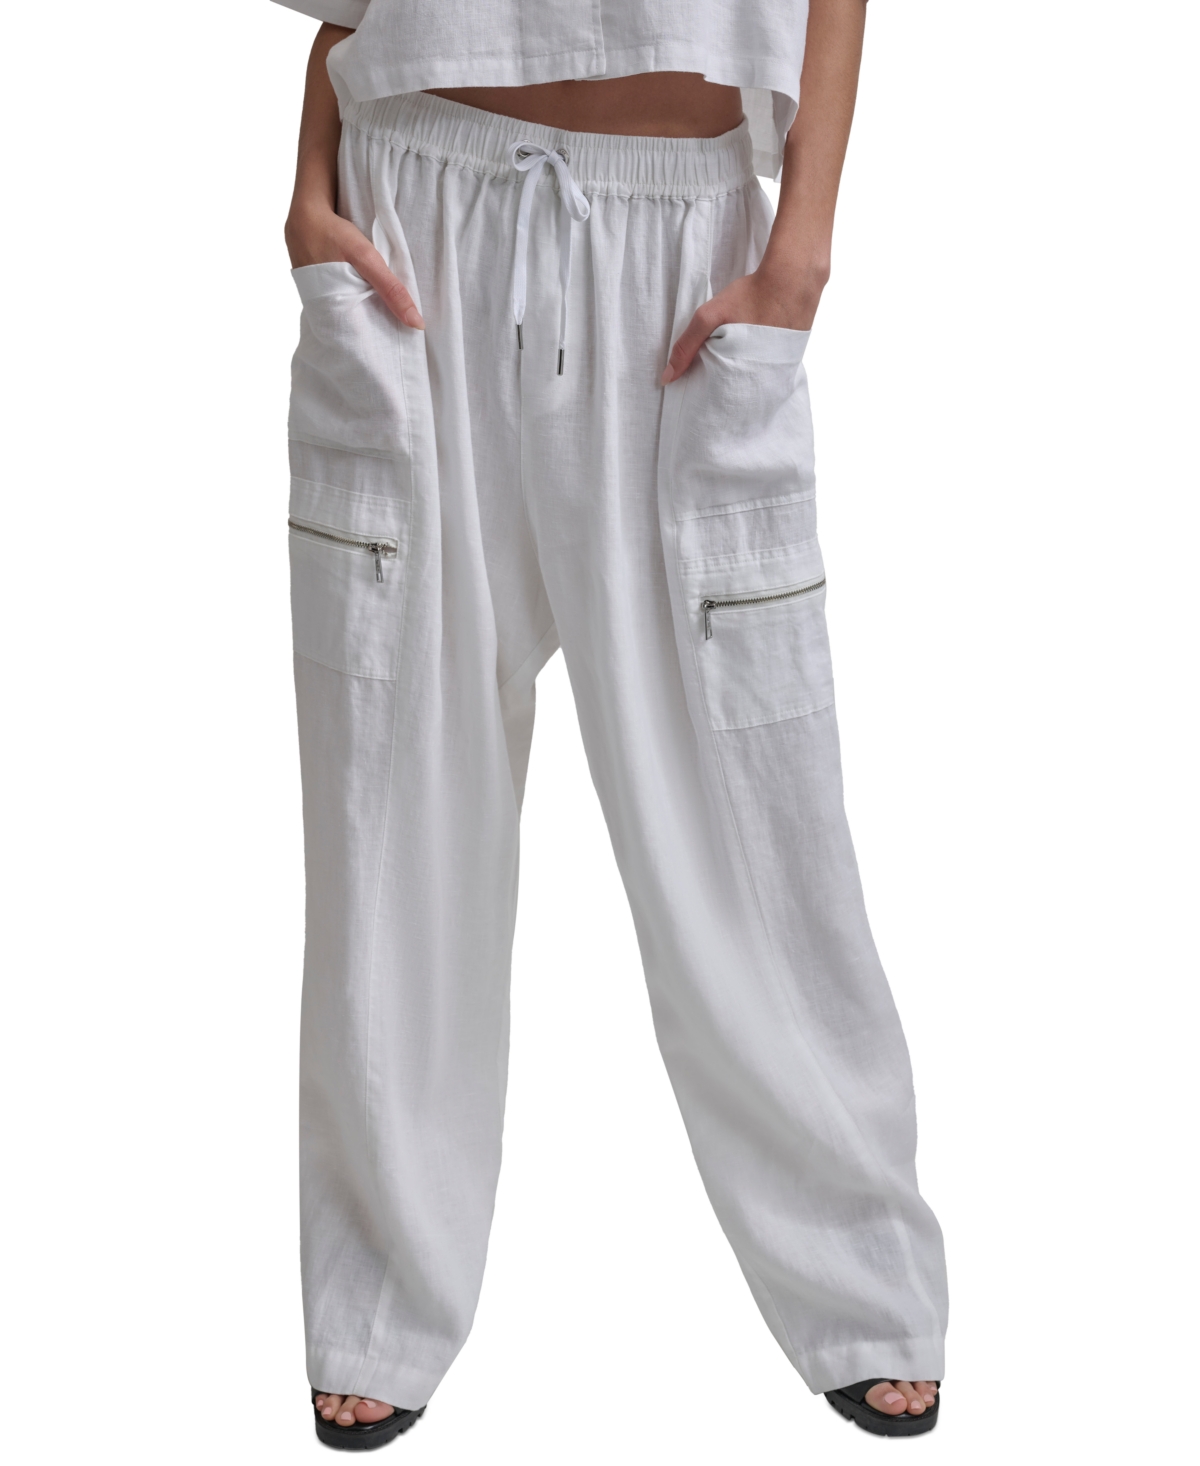 Women's Pull-On Mid-Rise Linen Cargo Pants - White